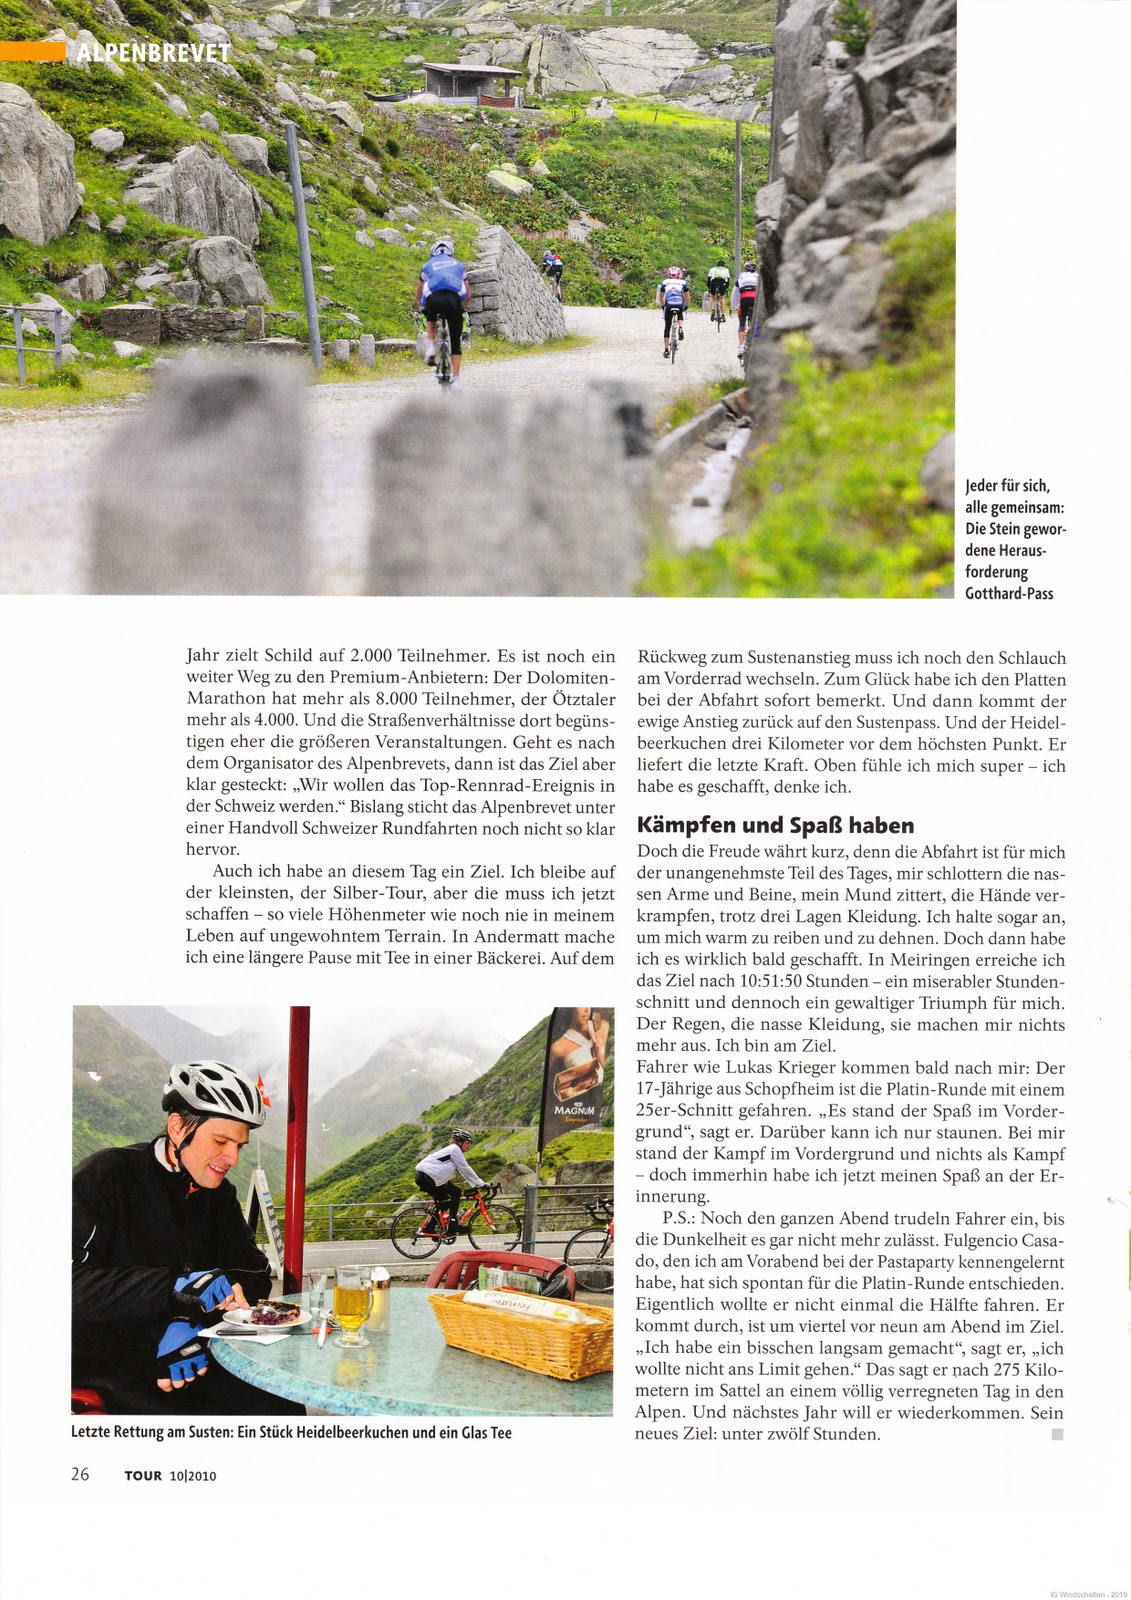 [Tour Magazin  10.2010 - Alpenbrevet (9).jpg]